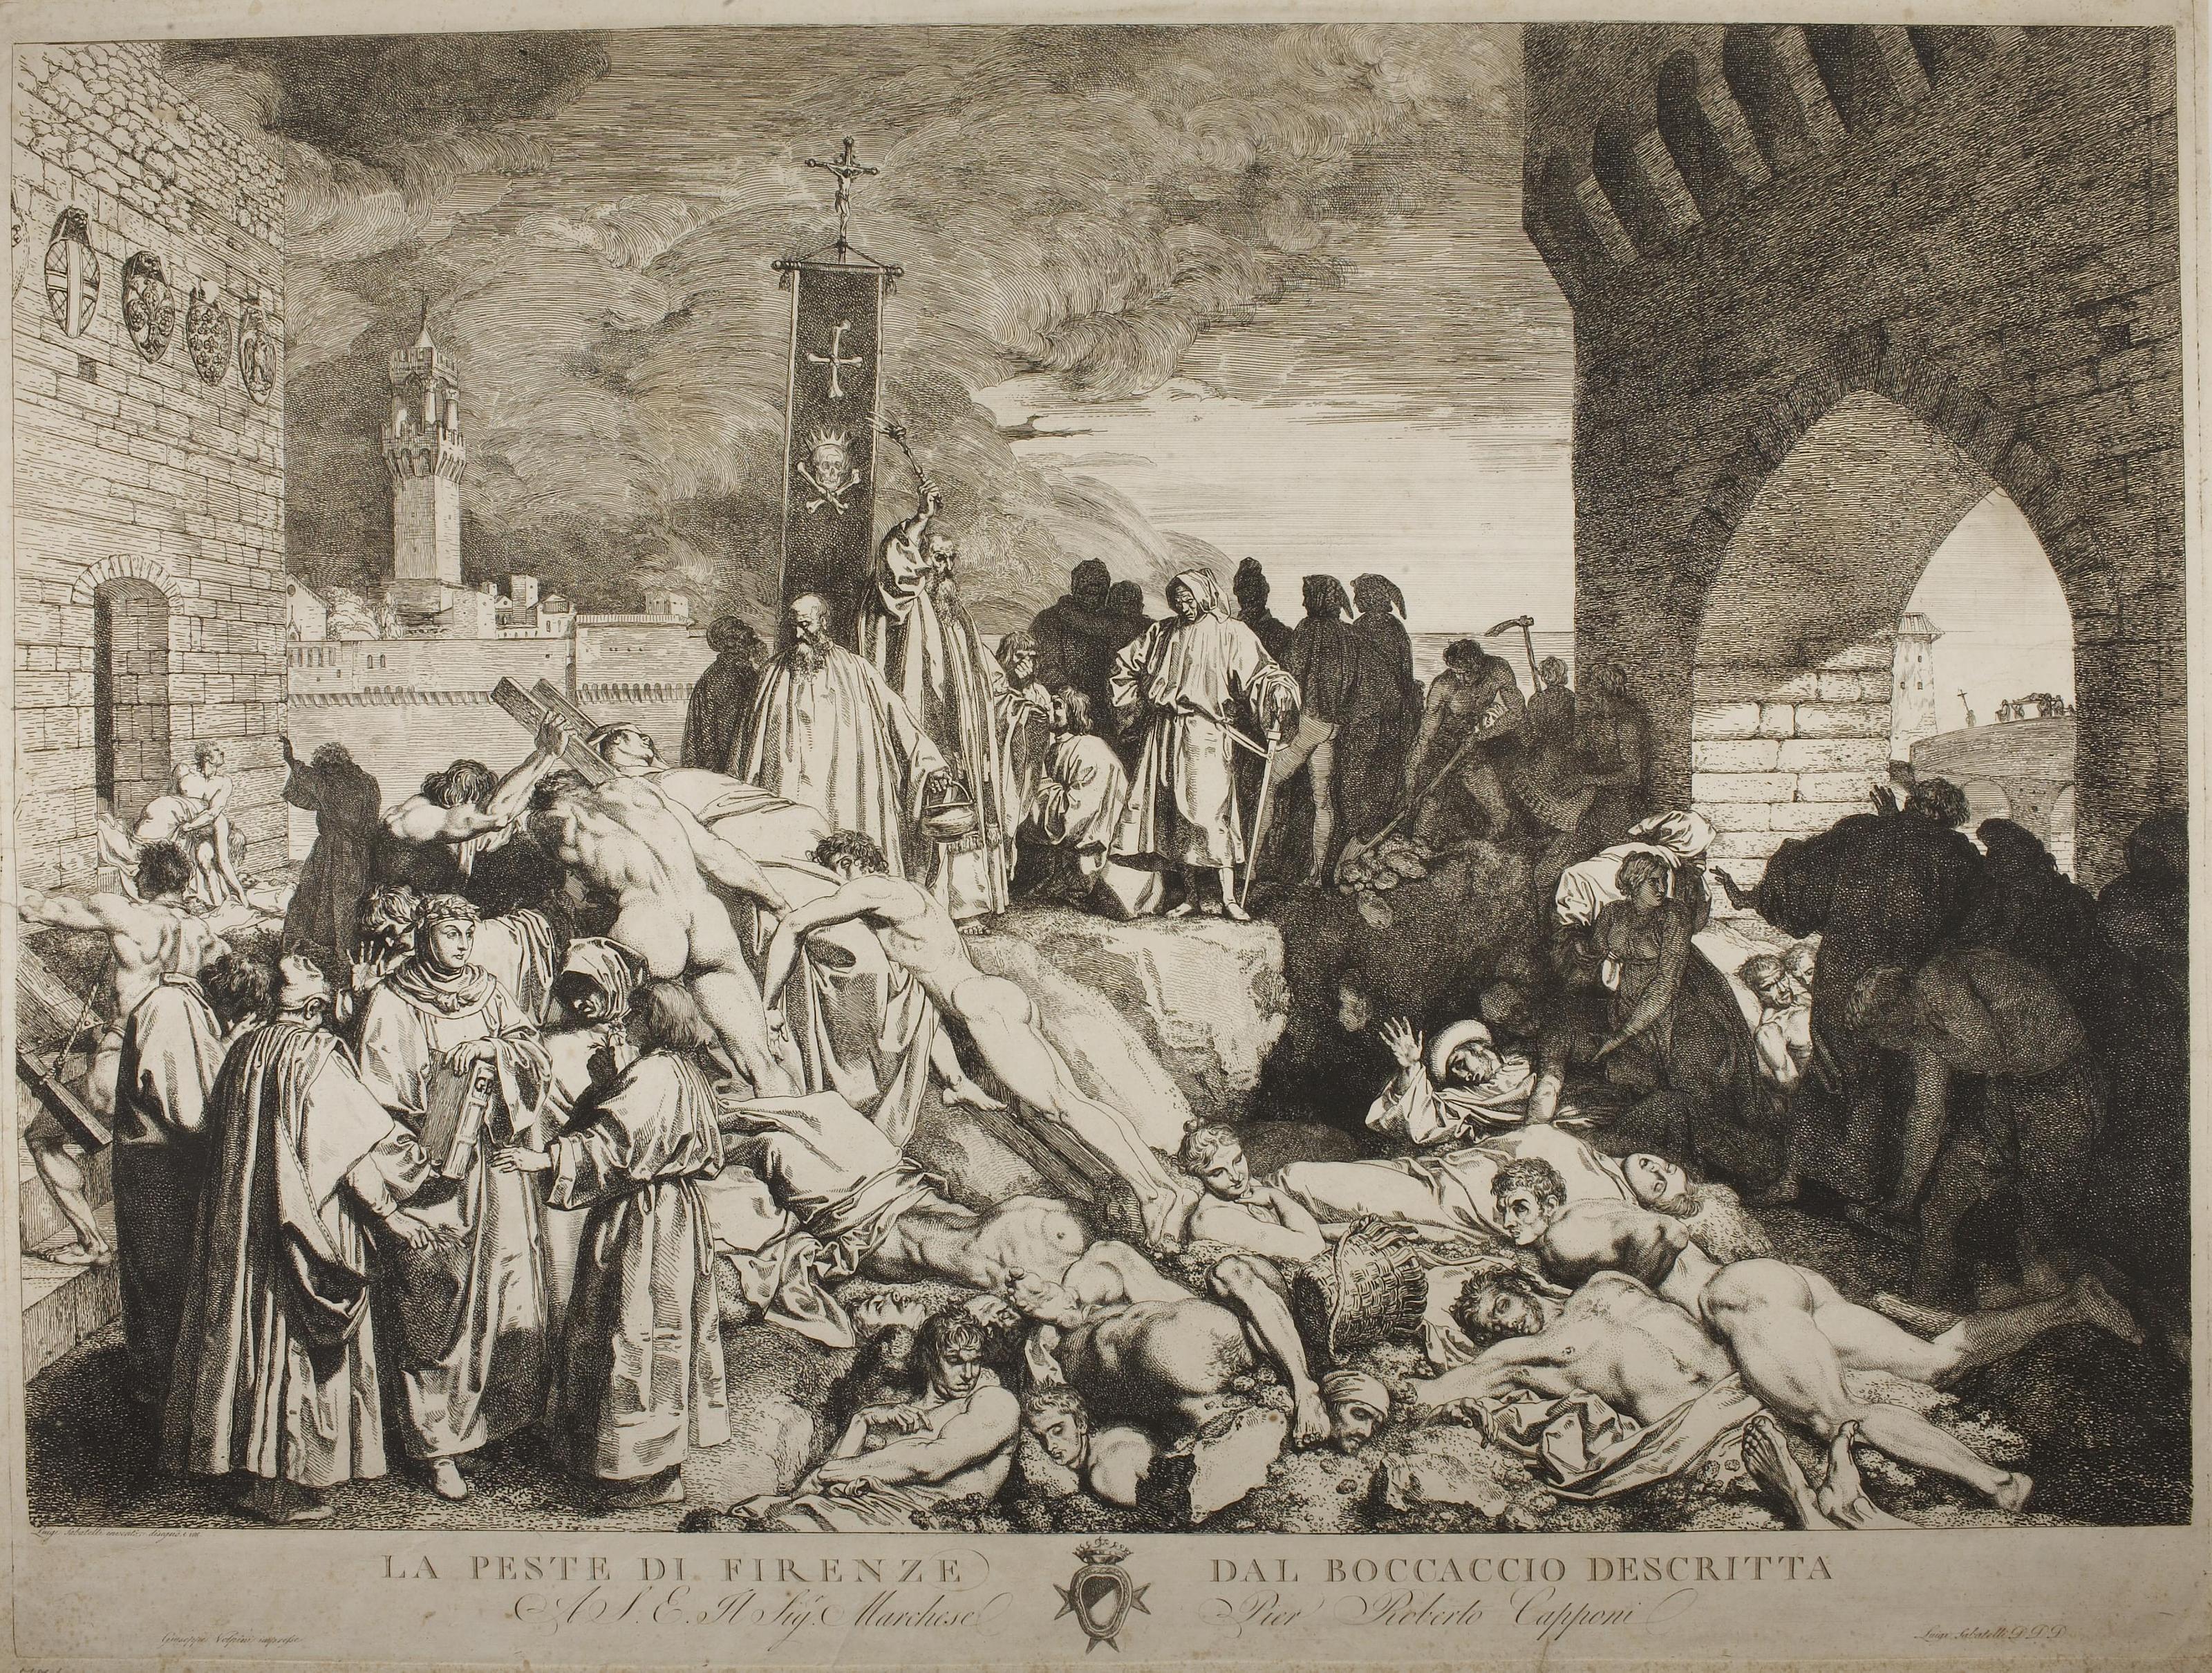 The Plague in Florence as described by Boccaccio, E1043 - Thorvaldsens ...